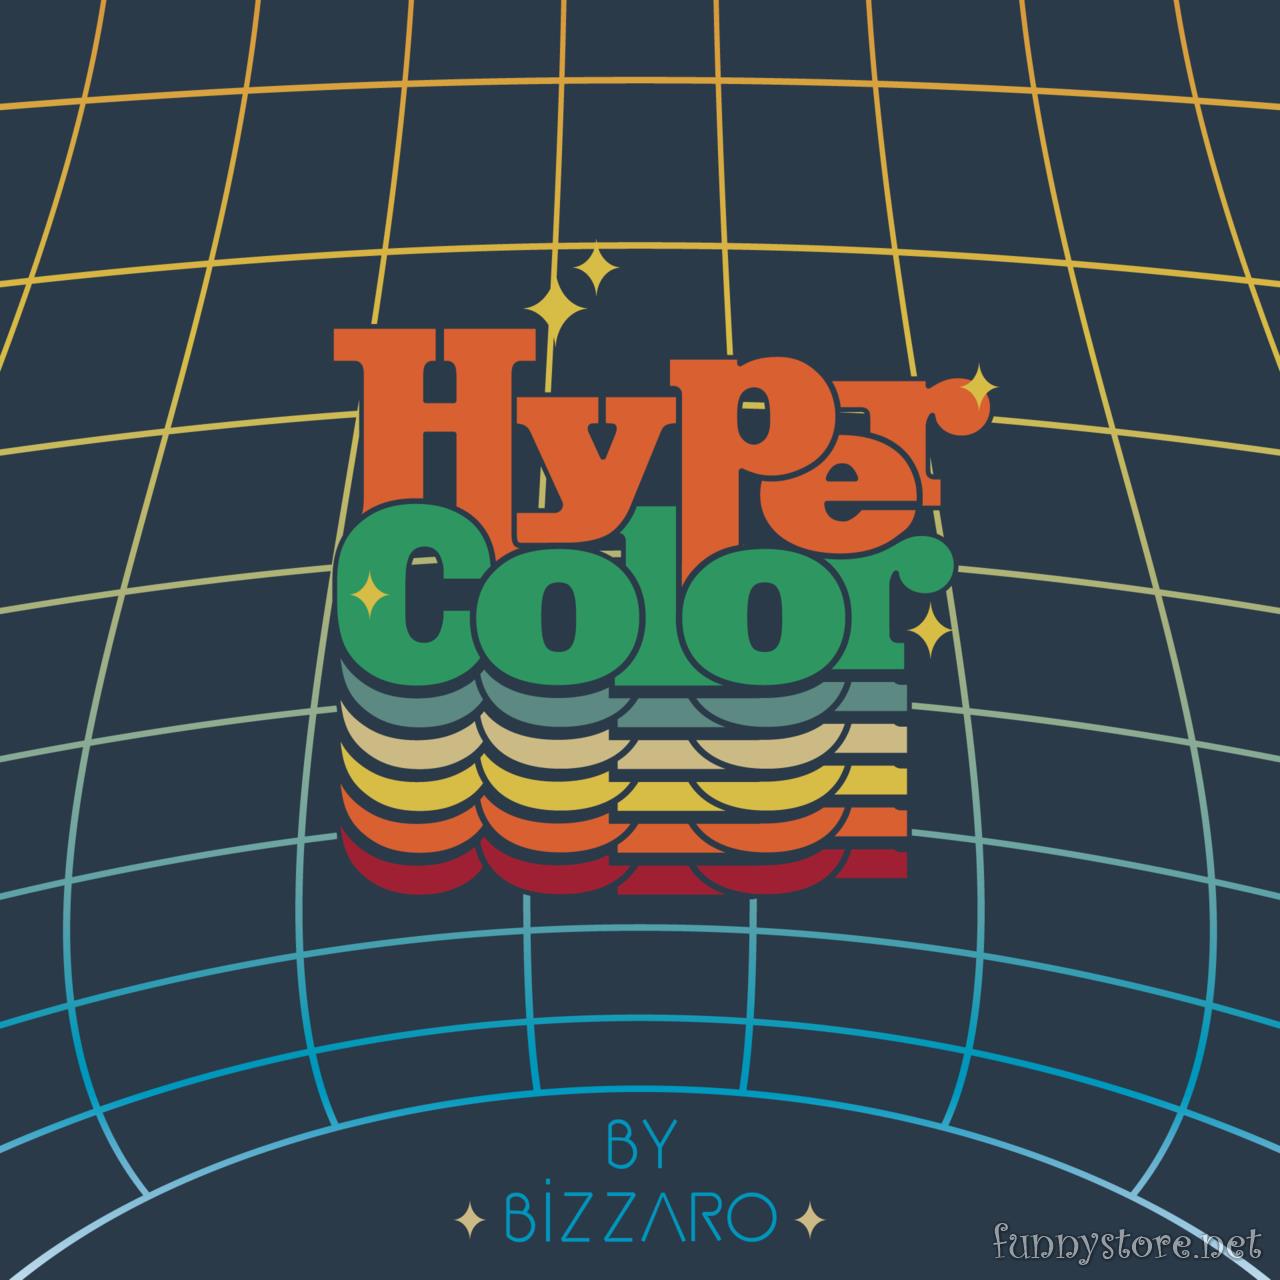 Bizzaro - Hyper Color